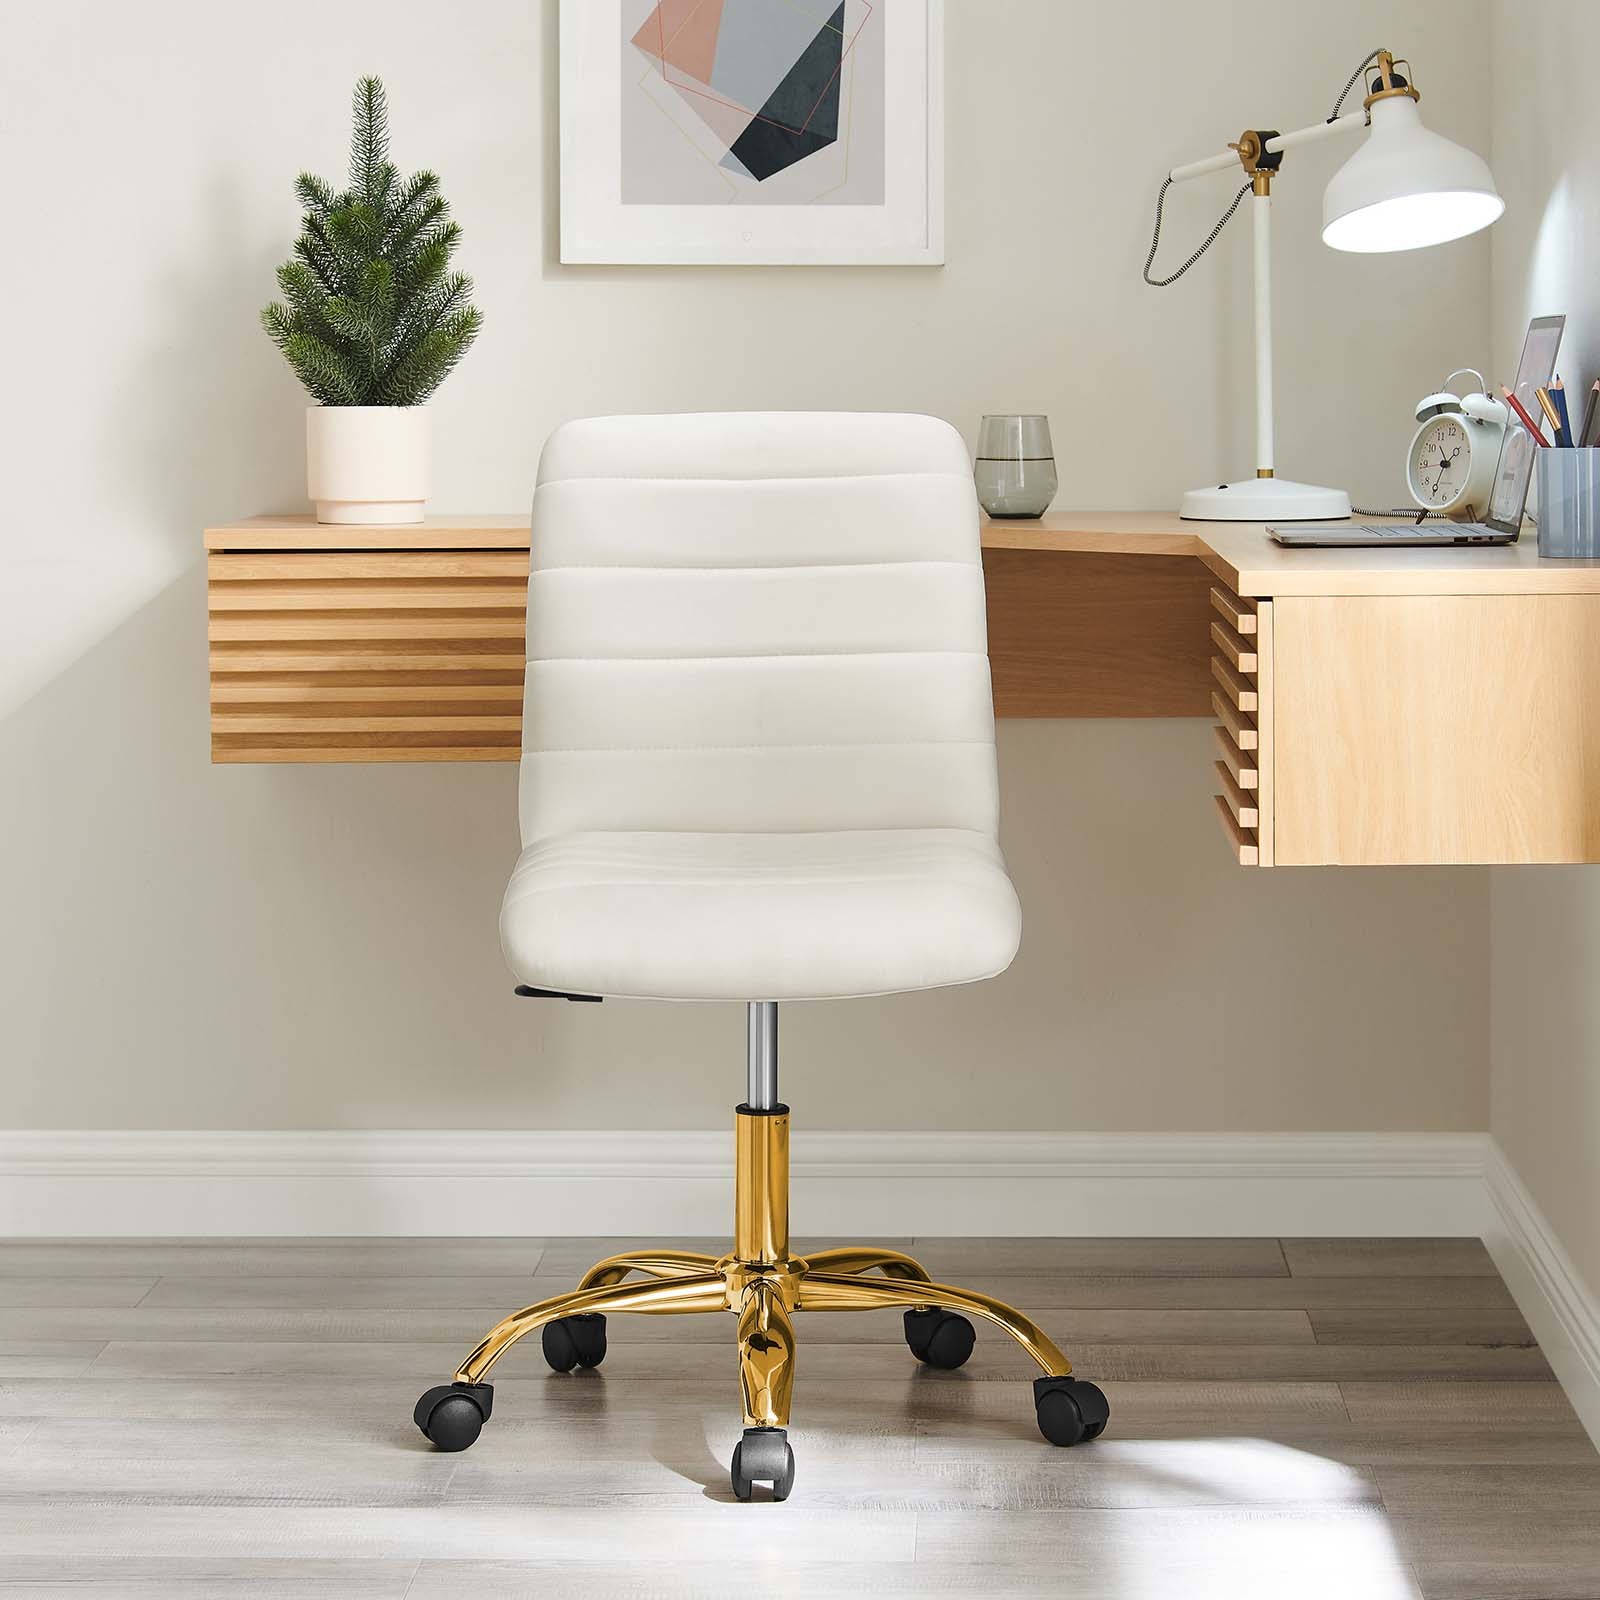 Ripple Armless Performance Velvet Office Chair - East Shore Modern Home Furnishings